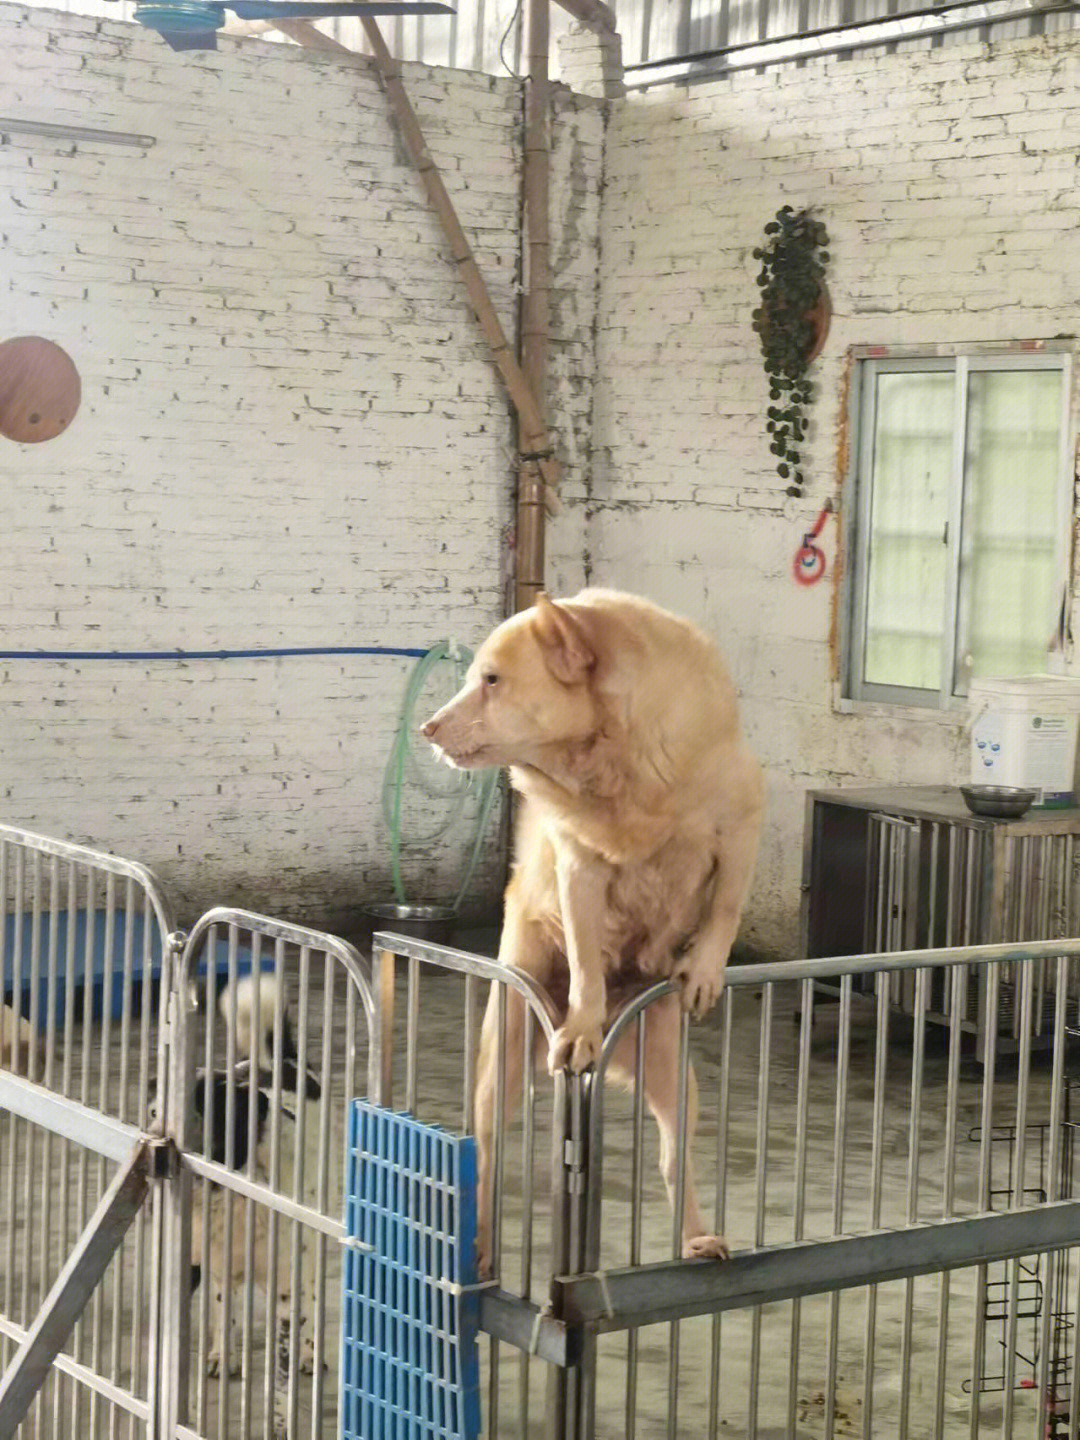 北京流浪猫狗救助站图片